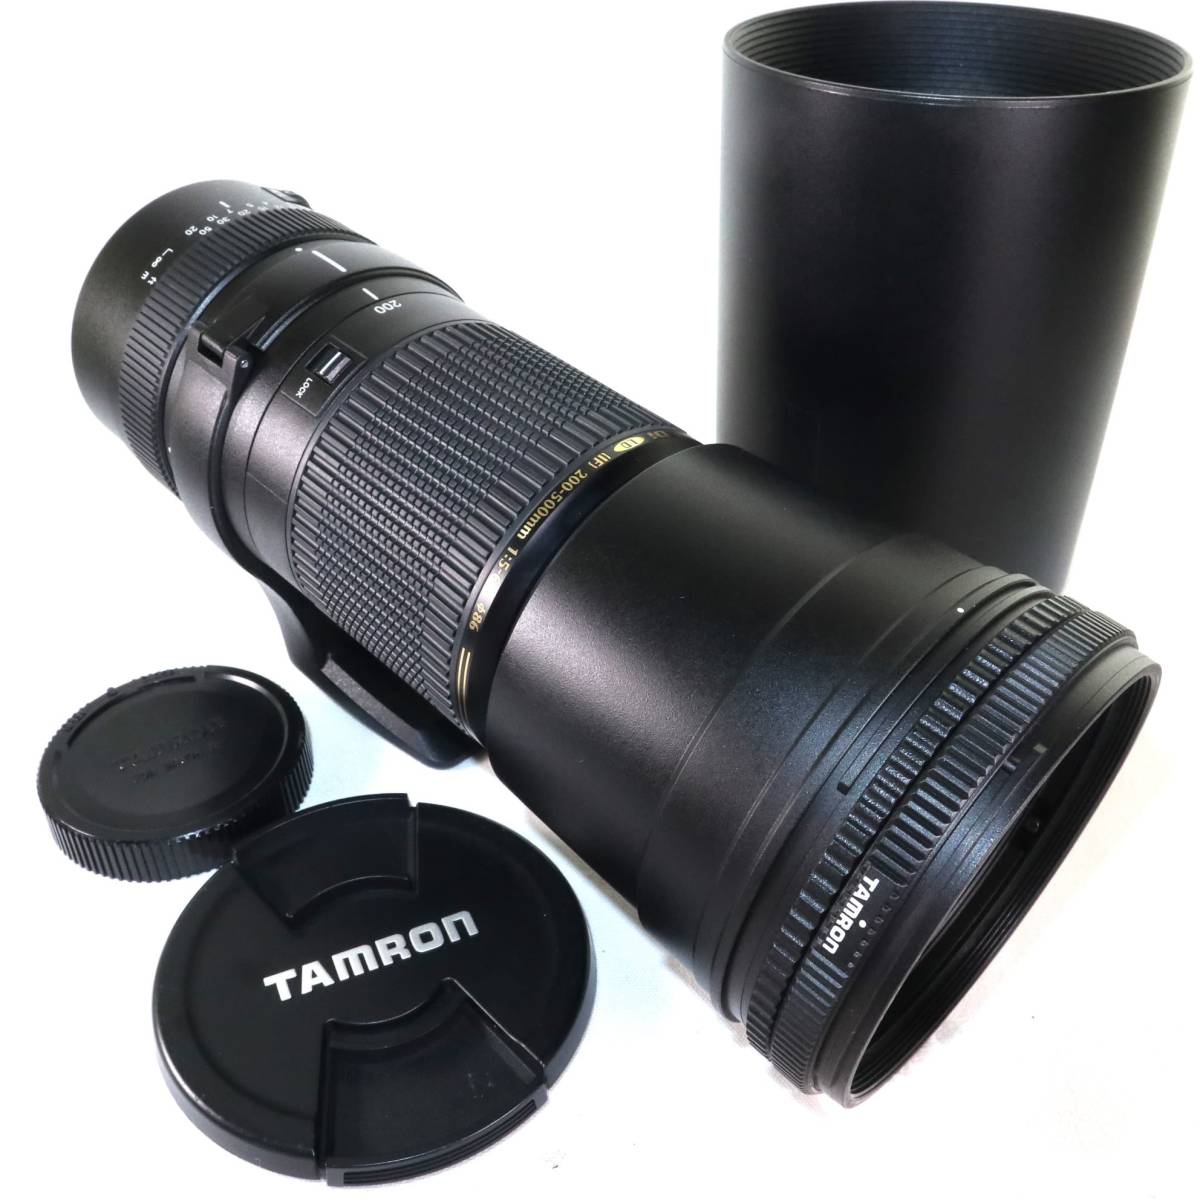 TAMRON SP AF 200-500mm F/5-6.3 Di LD [IF] (Model A08) (ﾆｺﾝ用 